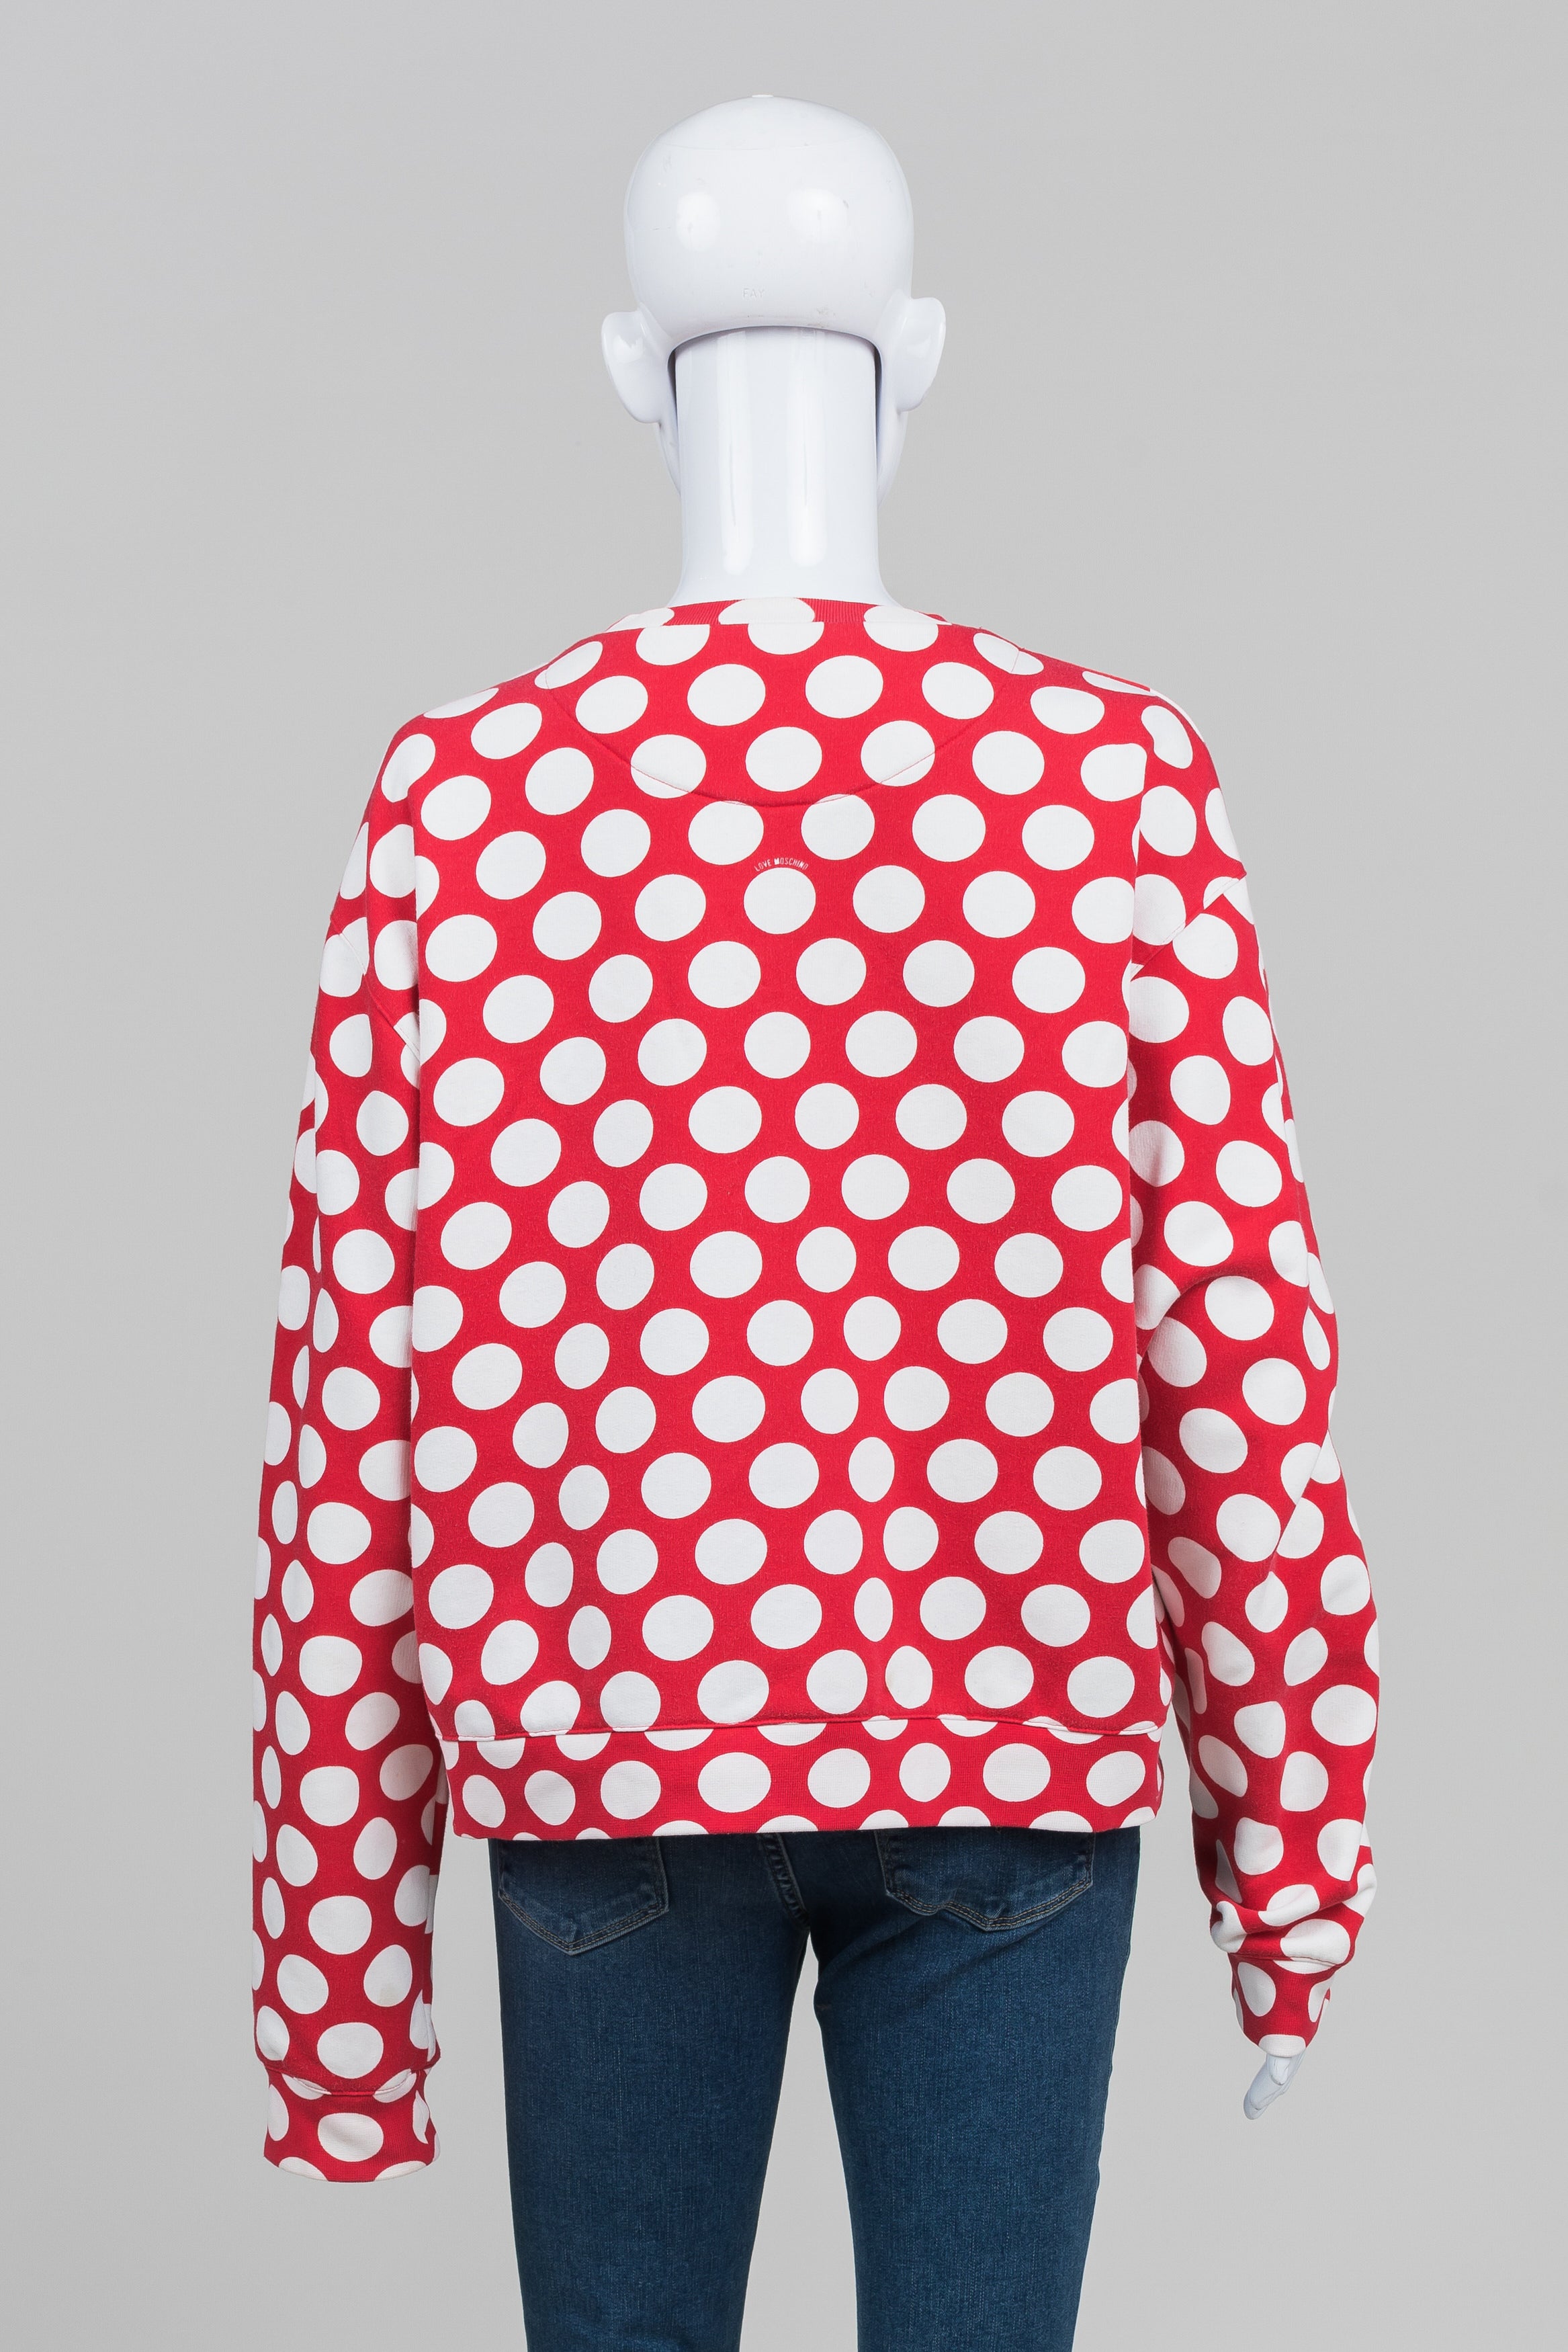 Moschino Love Red Polka Dot Sweatshirt (10)